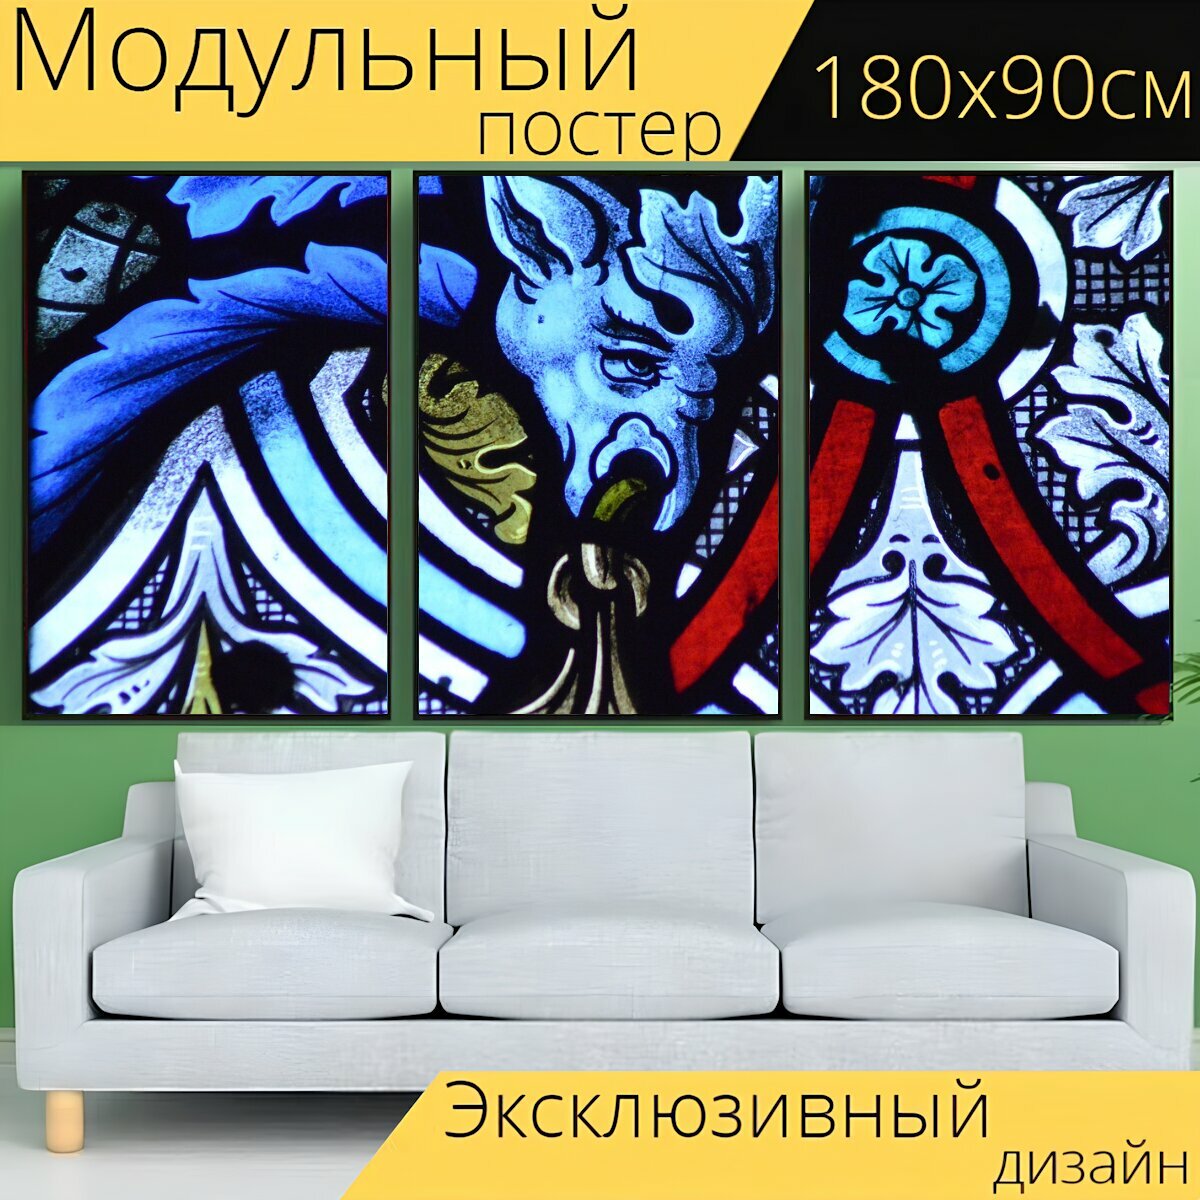 Модульный постер "Витраж, окно, декоративный" 180 x 90 см. для интерьера